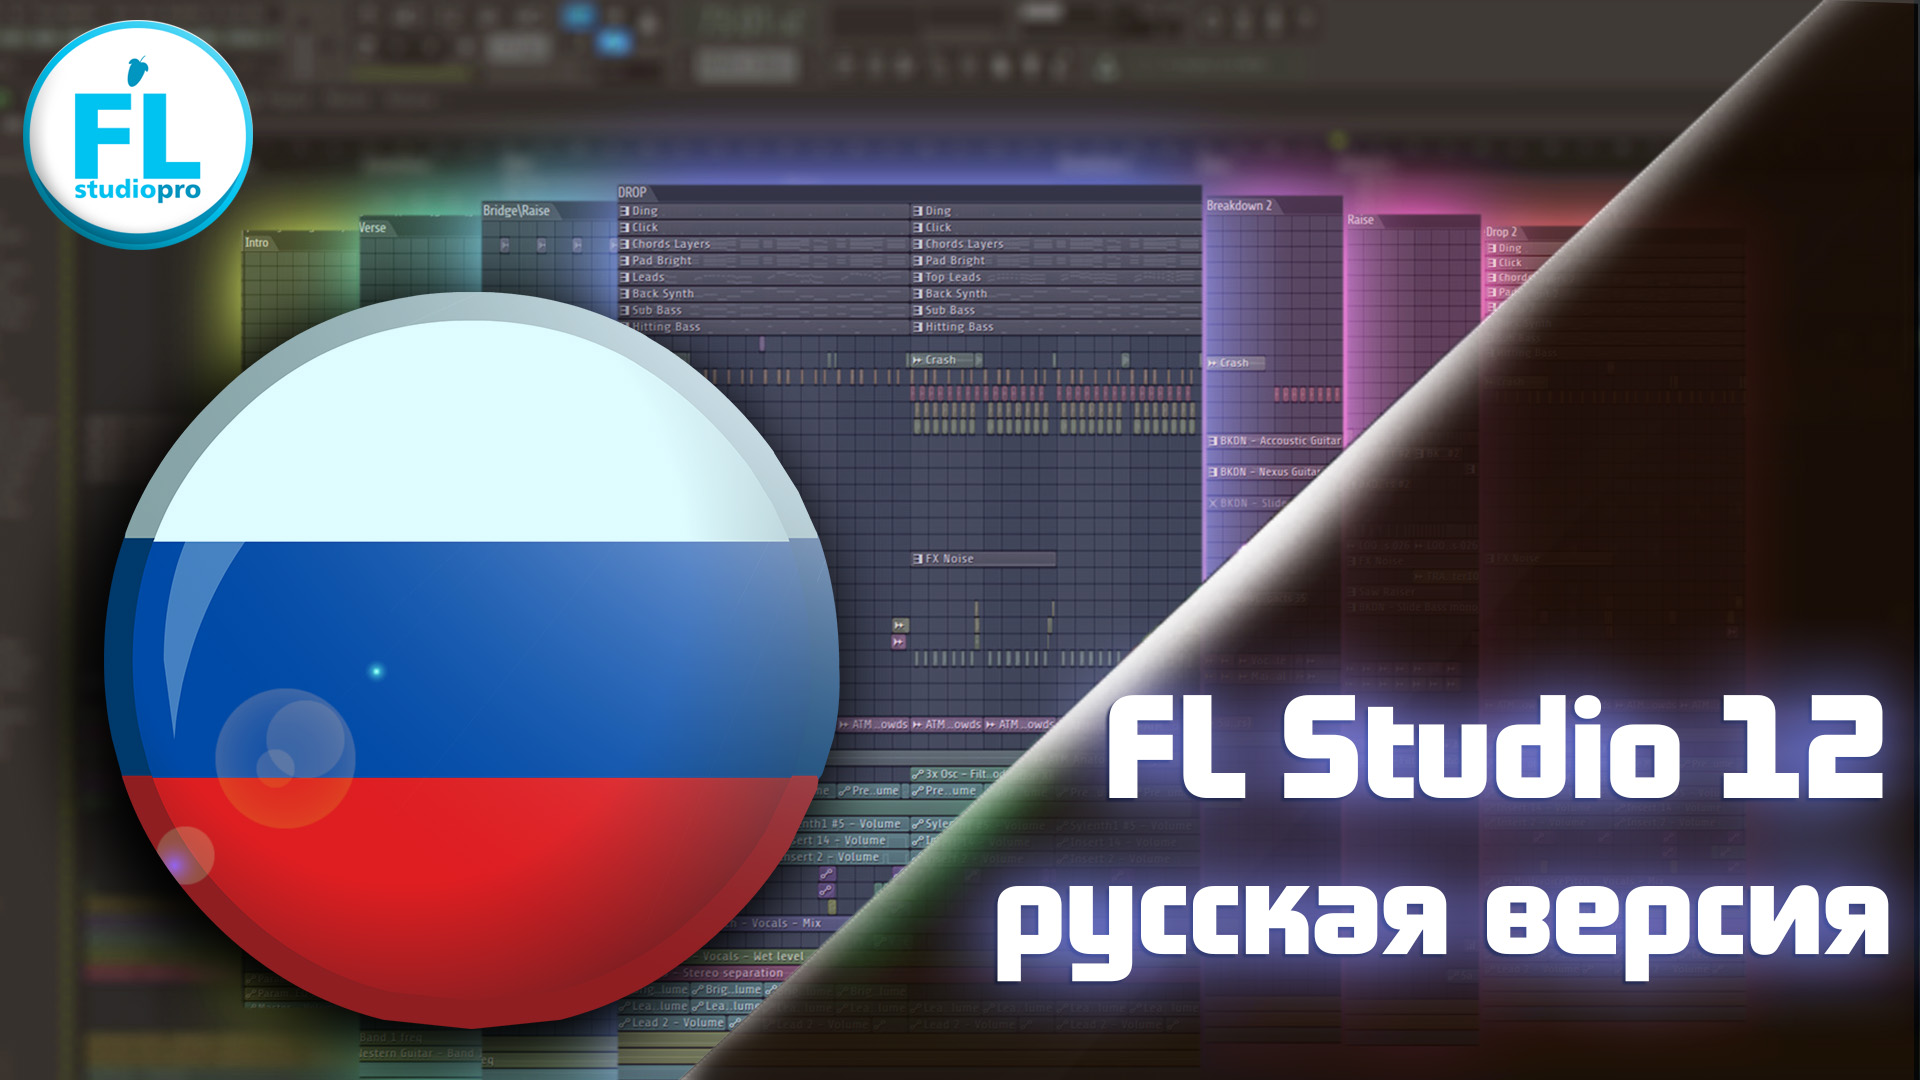 FL Studio 12 Русификатор Скачать Бесплатно Торрент